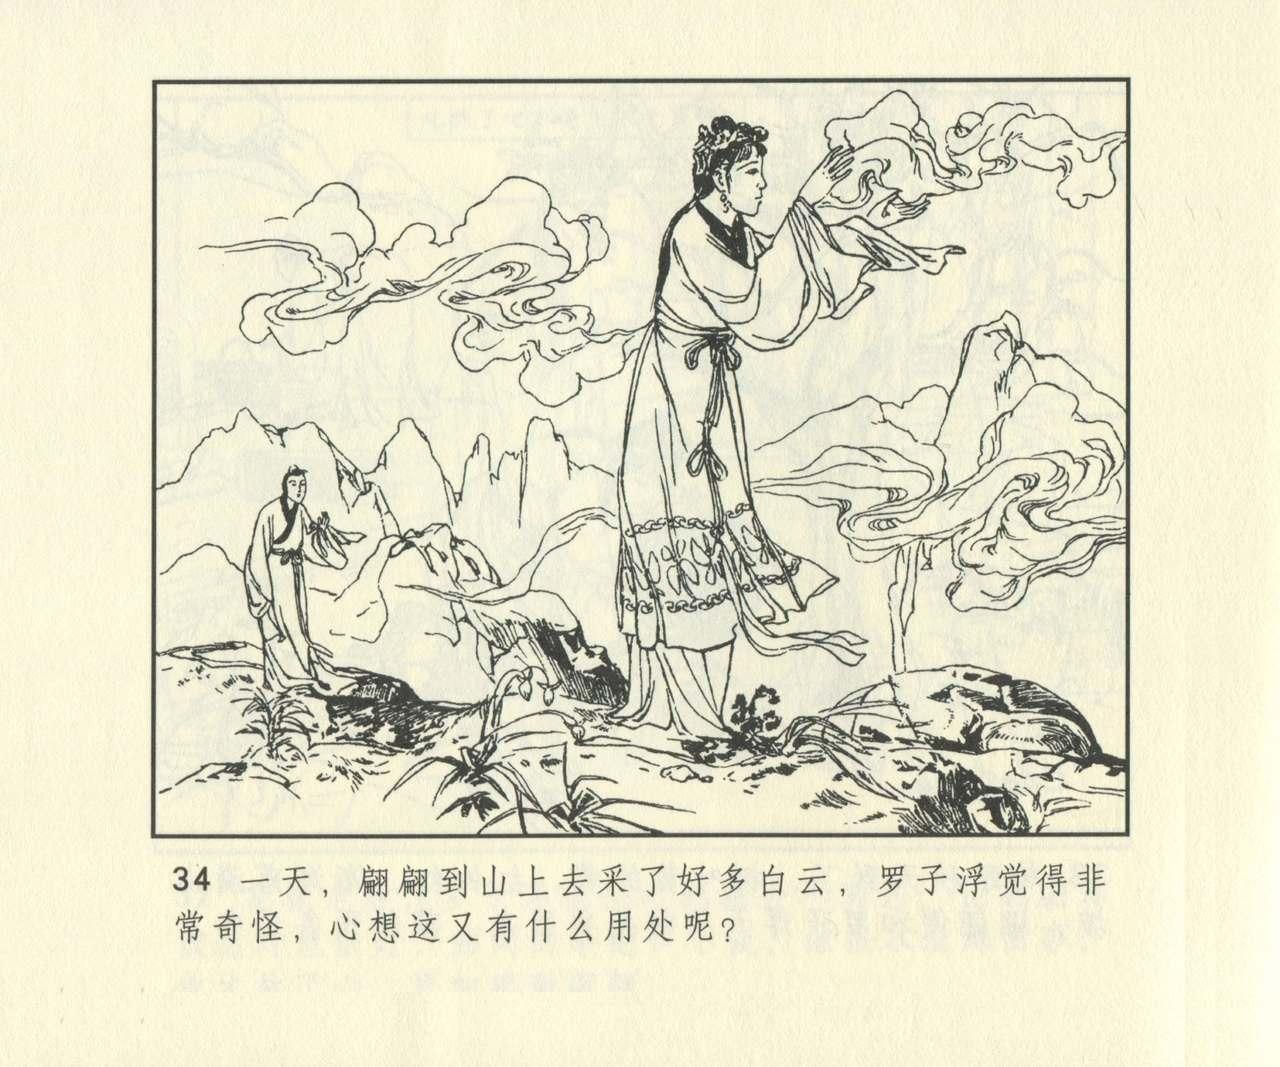 聊斋志异 张玮等绘 天津人民美术出版社 卷二十一 ~ 三十 650